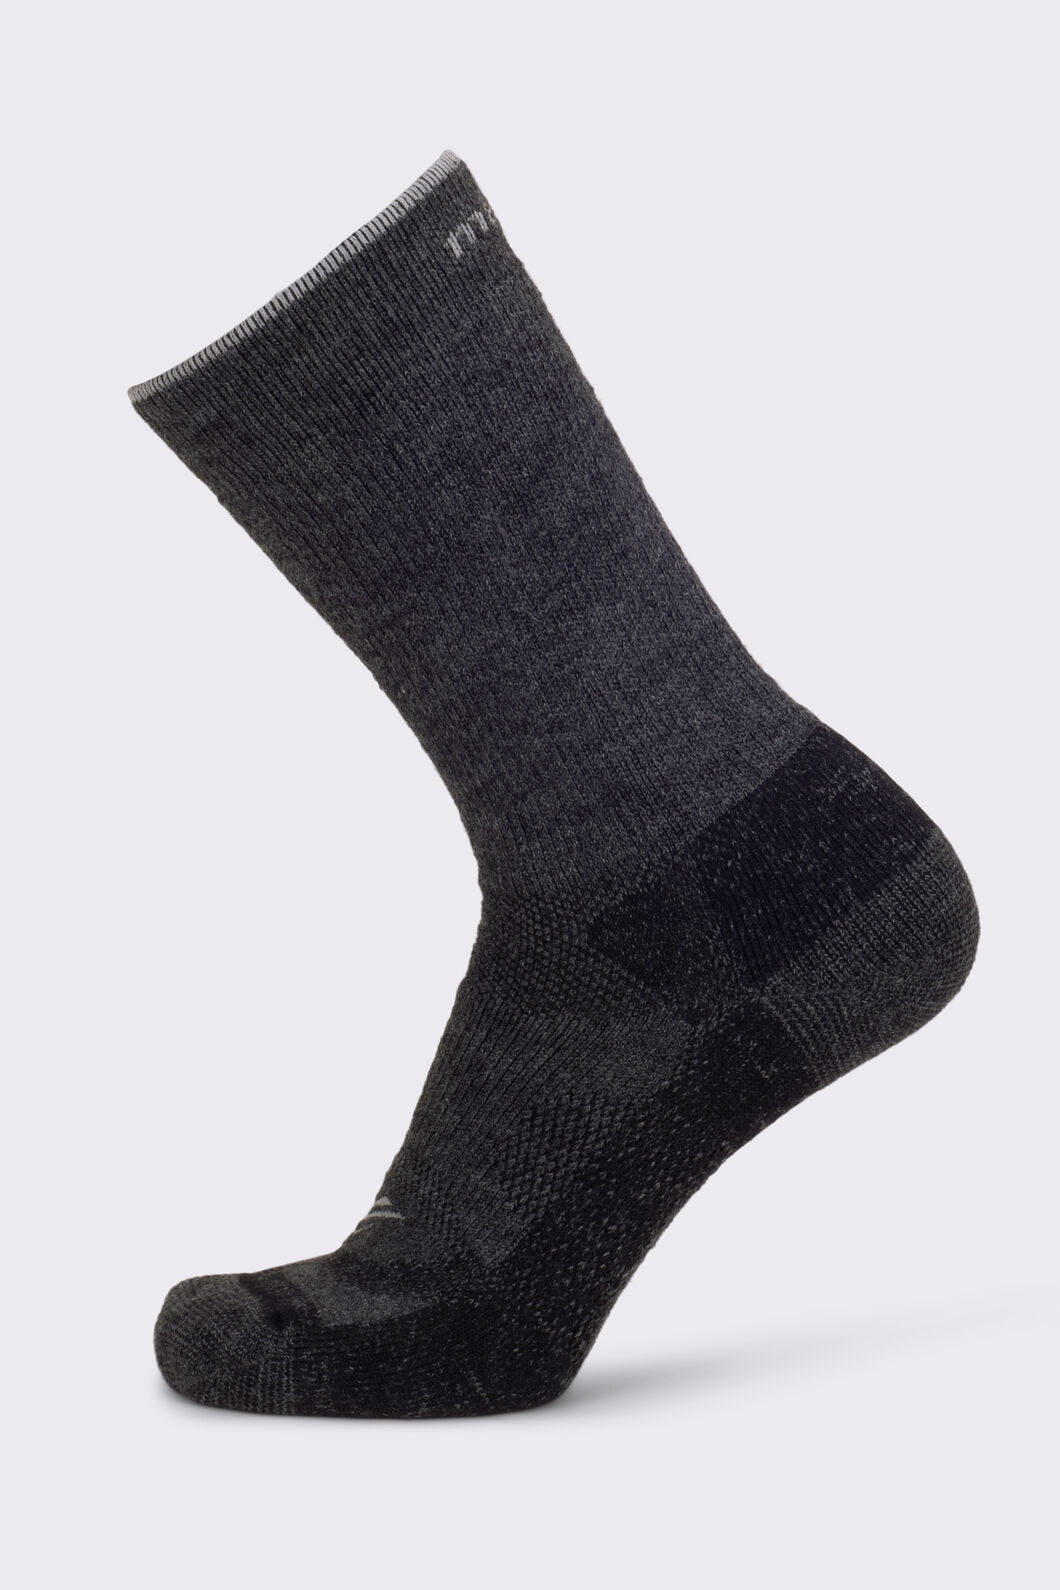 Macpac Merino Hiker Socks